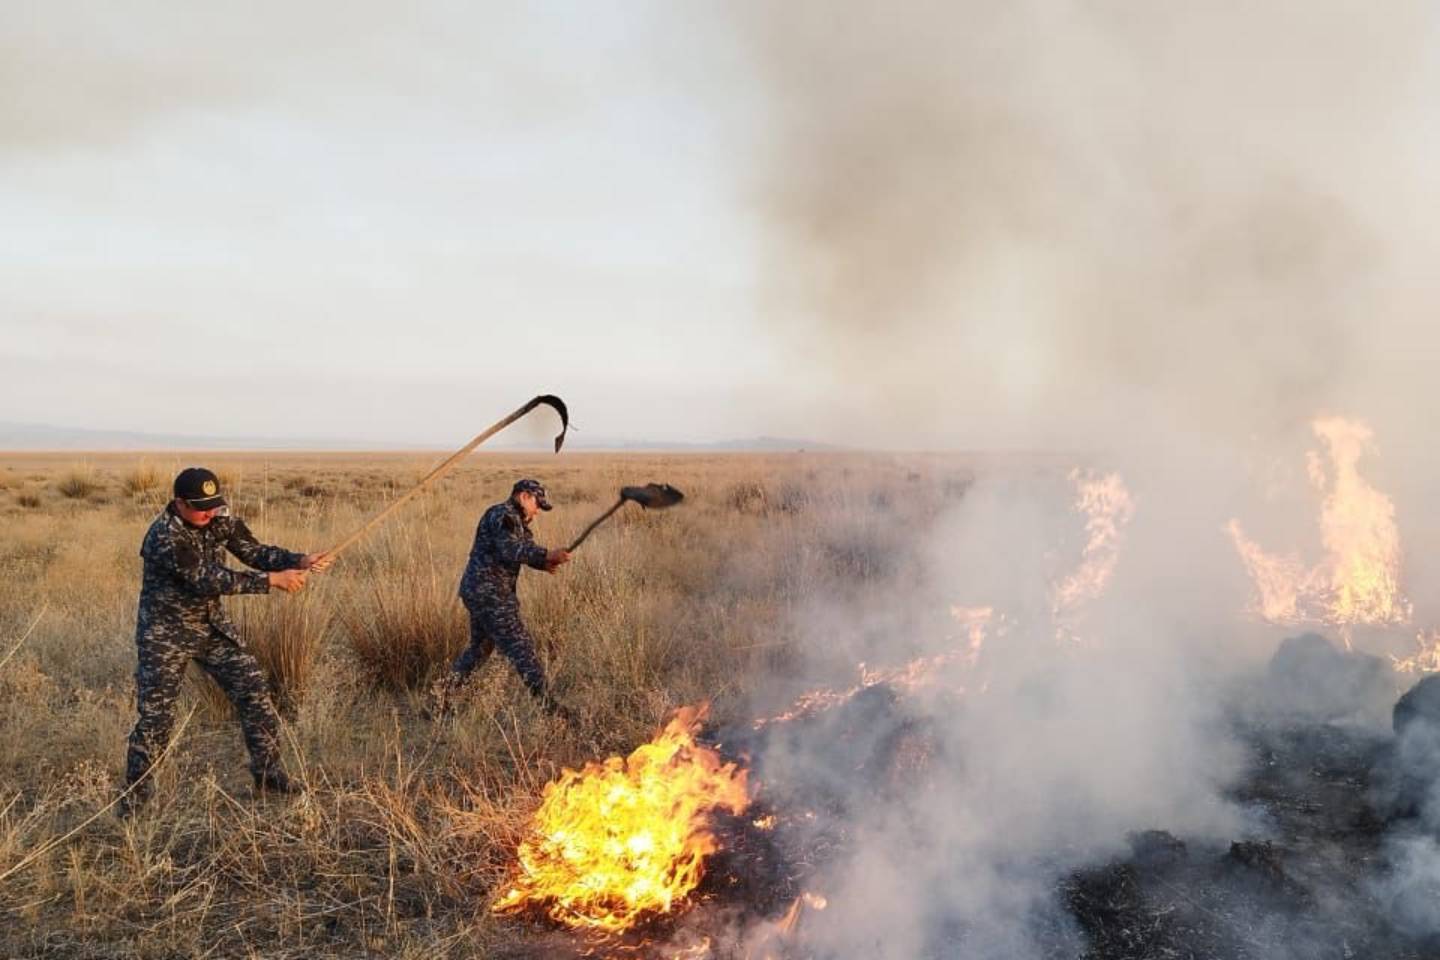 Происшествия в Казахстане и мире / Последние новости о пожарах в ВКО